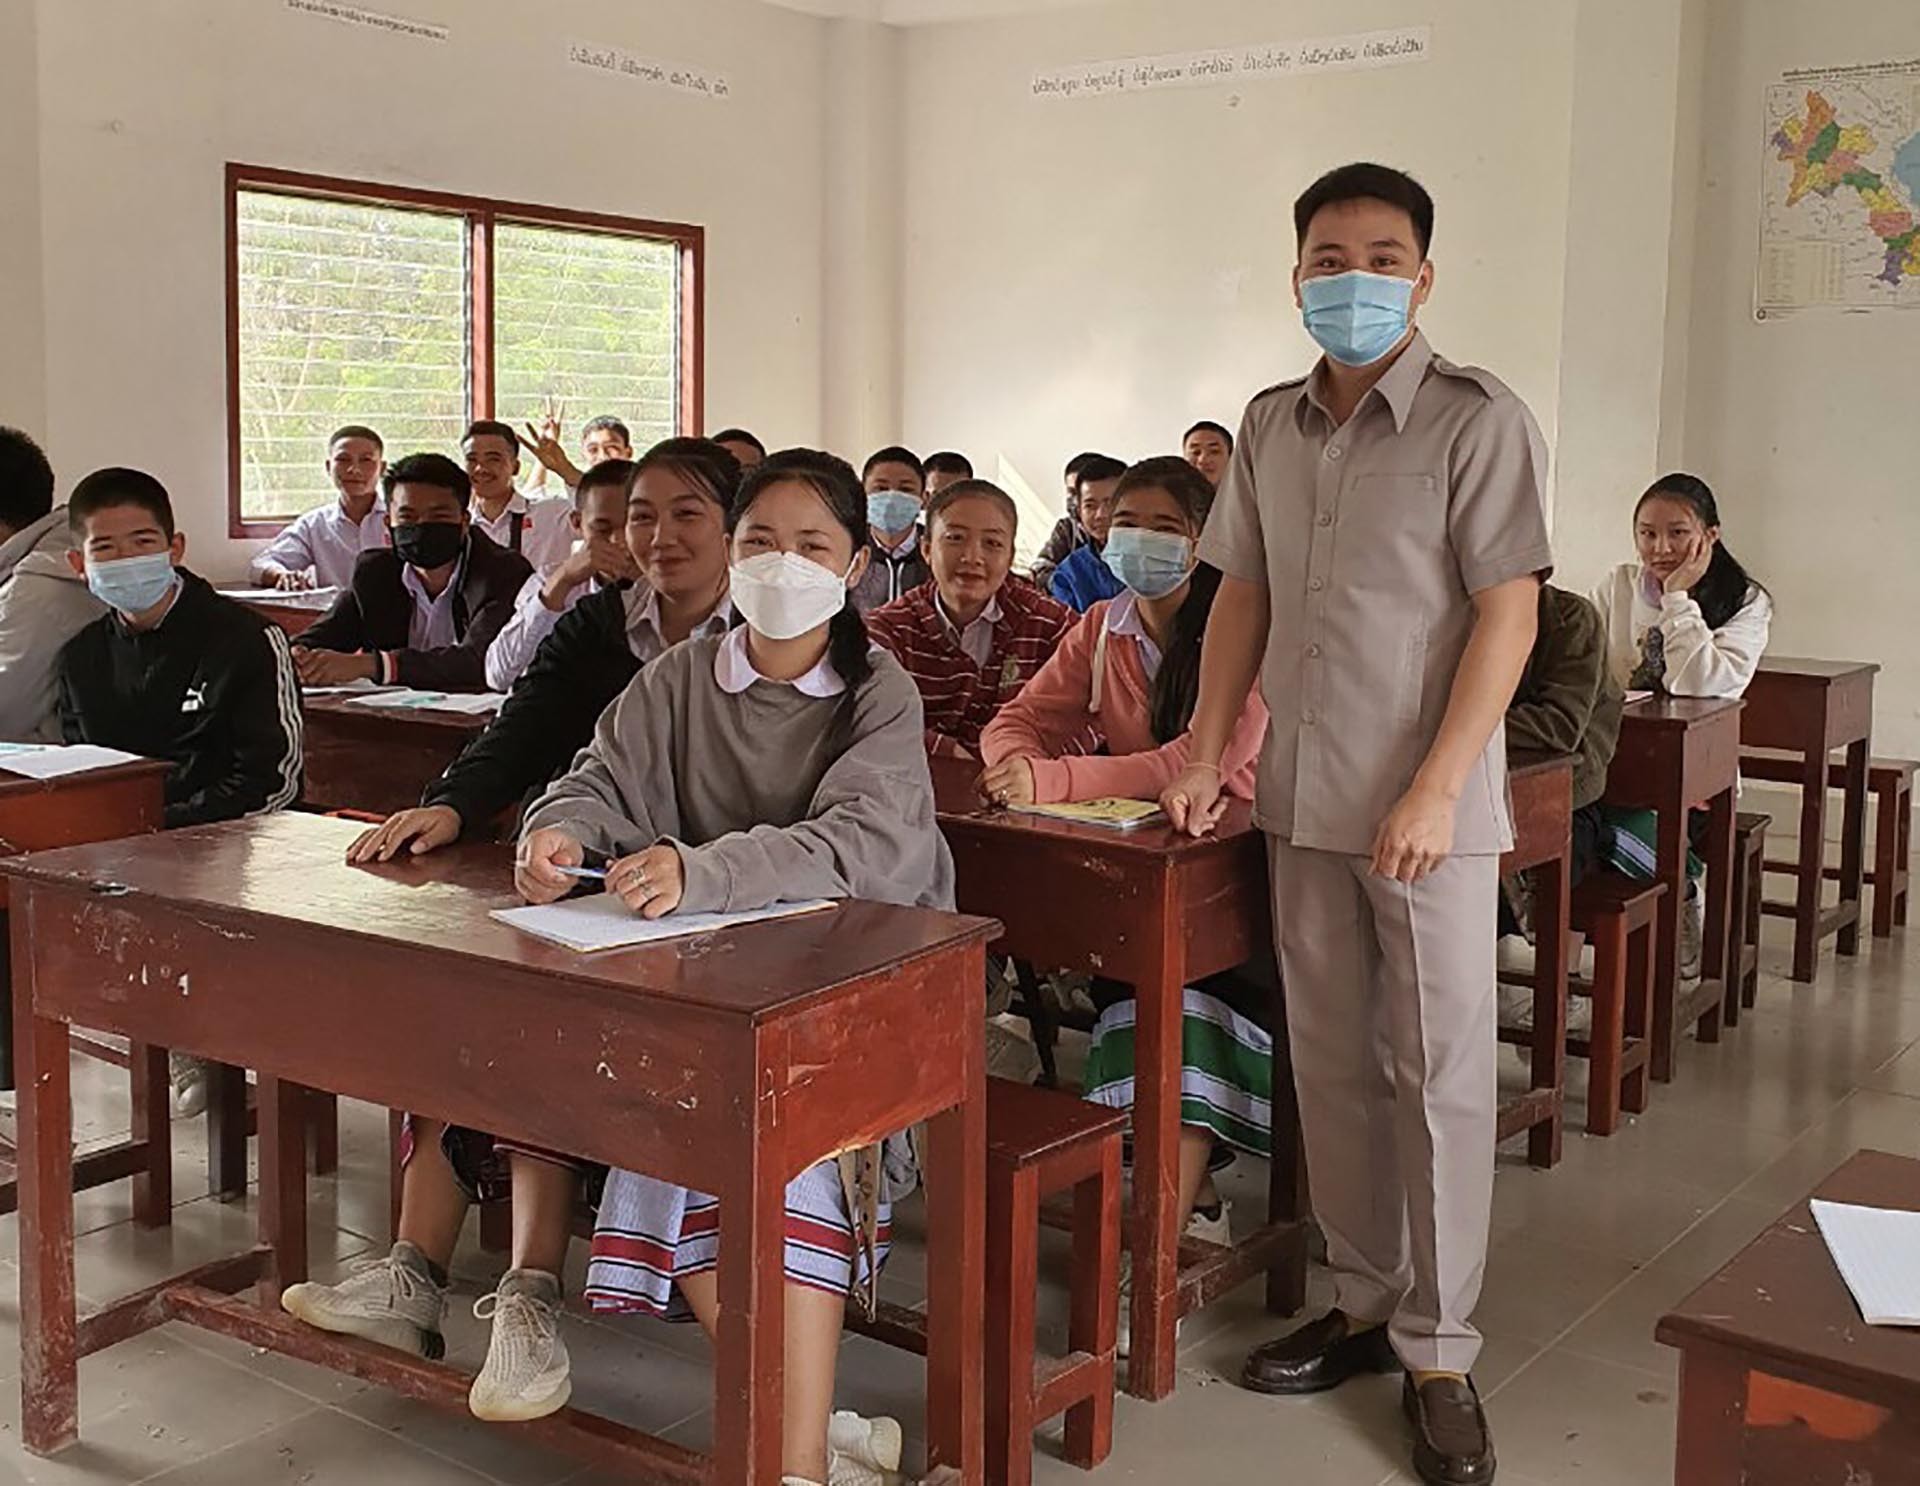 Thầy giáo Nguyễn Thành Ngọc trên lớp học tại Lào.